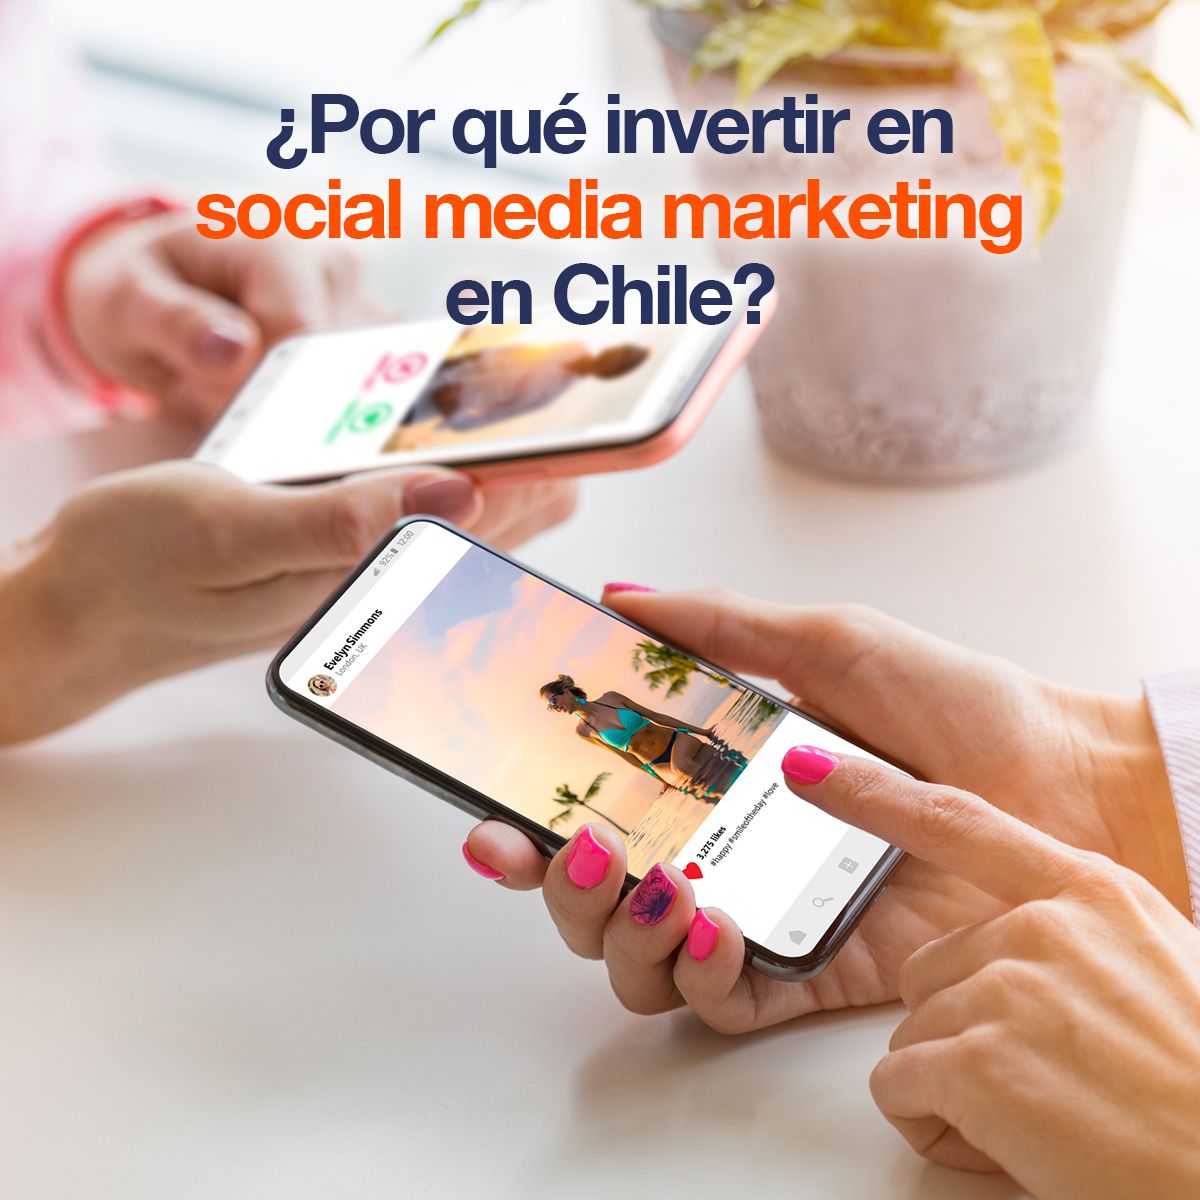 ¿Por qué invertir en social media marketing en Chile?